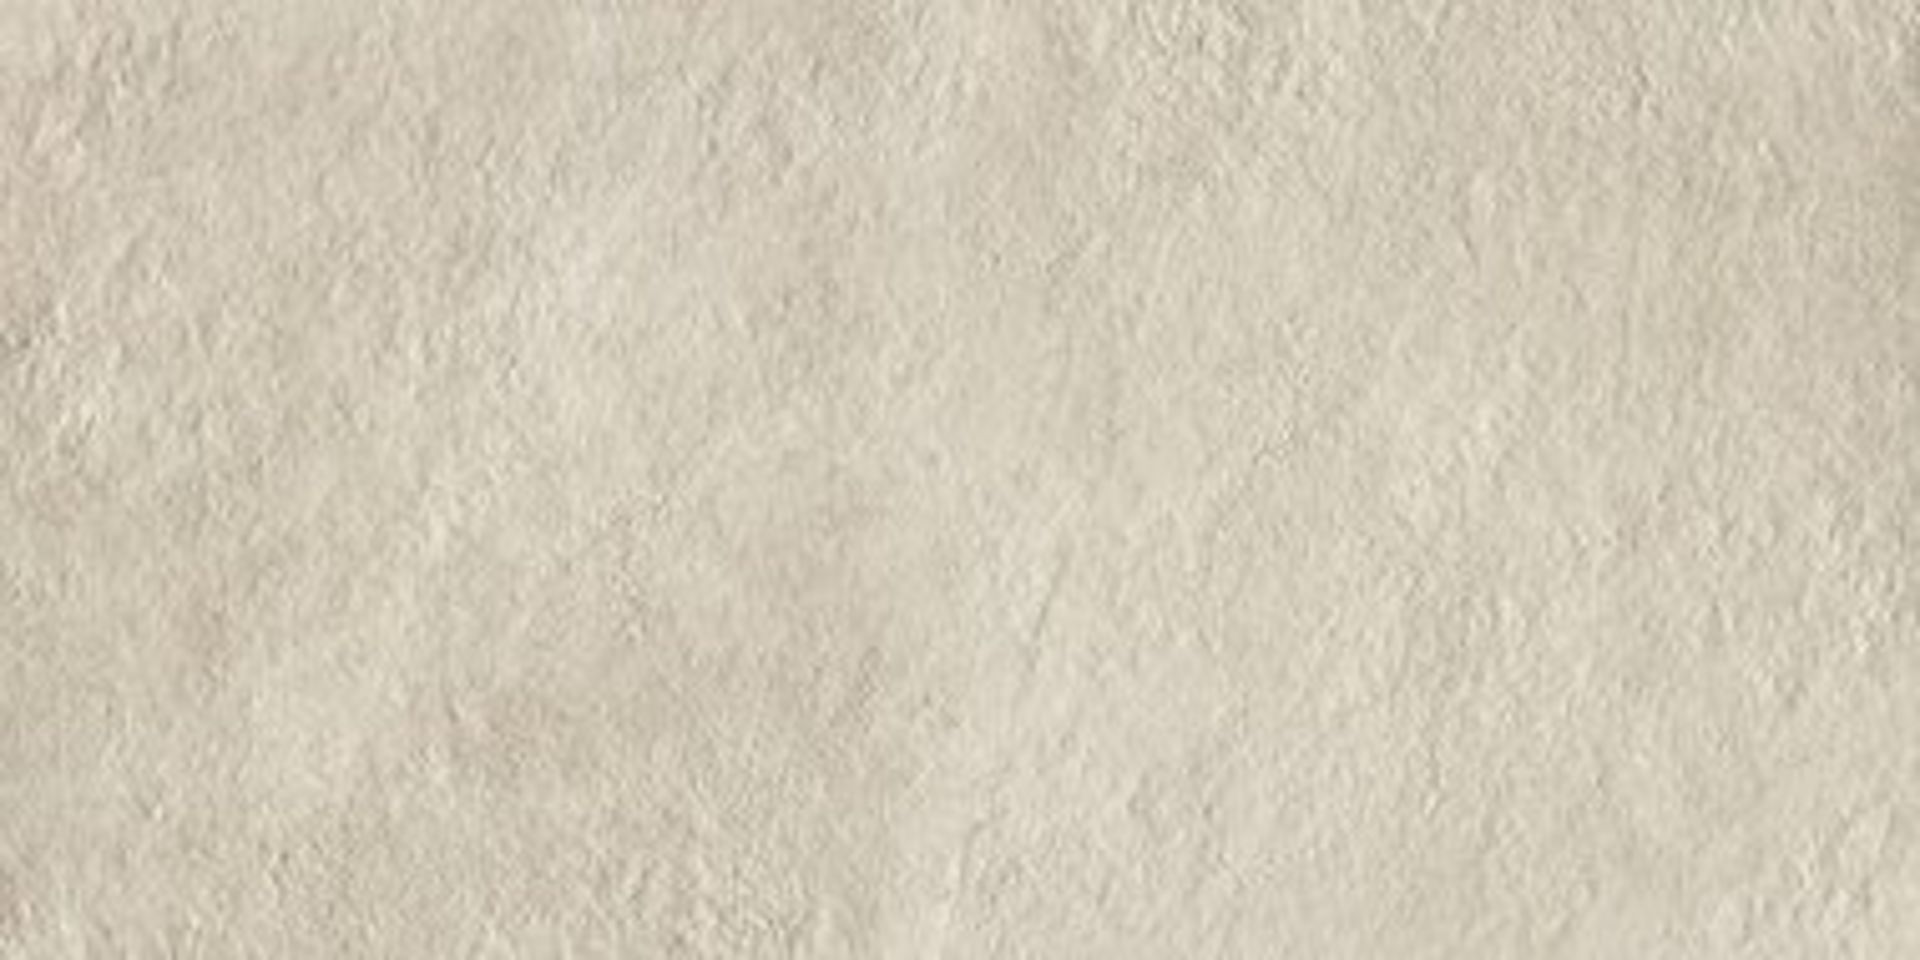 12 x Boxes of RAK Porcelain Tiles - Design Concrete Range - Sand Colour Matt Finish - Size: 120x60cm - Image 10 of 12